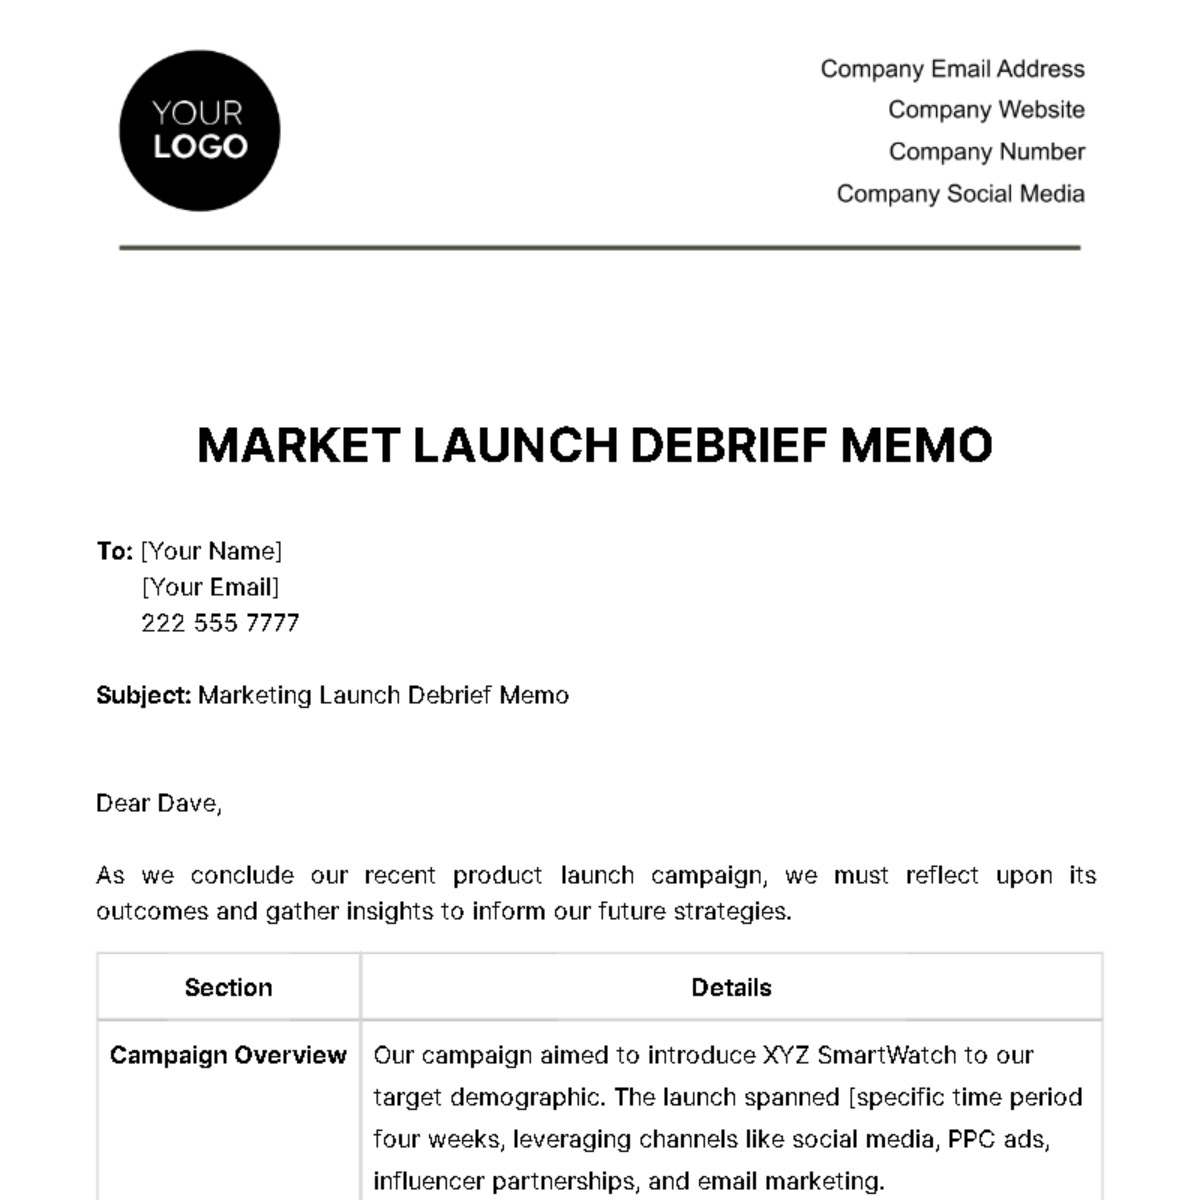 Marketing Launch Debrief Memo Template